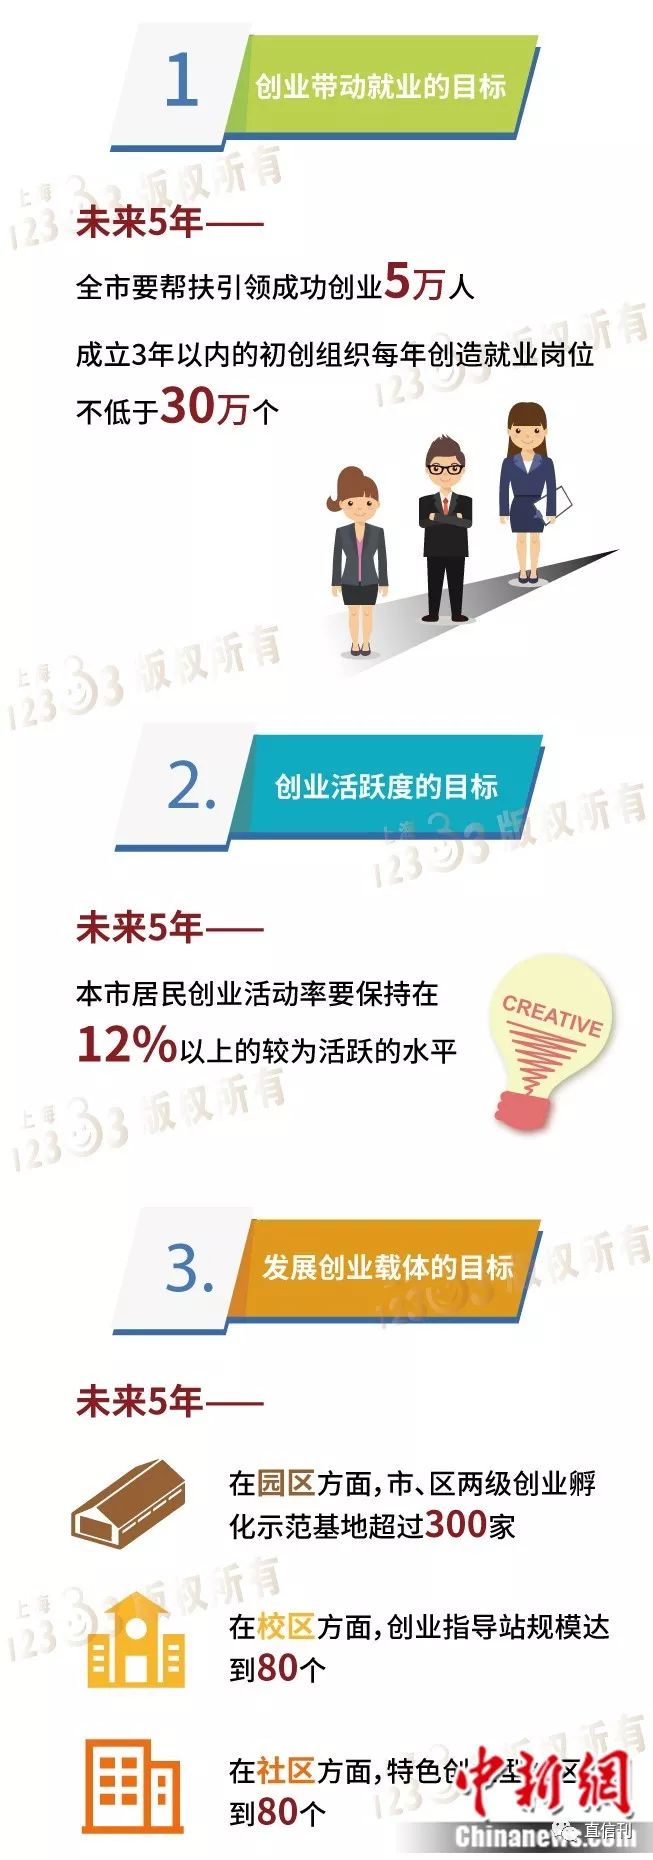 上海发布新一轮鼓励创业带动就业专项行动计划